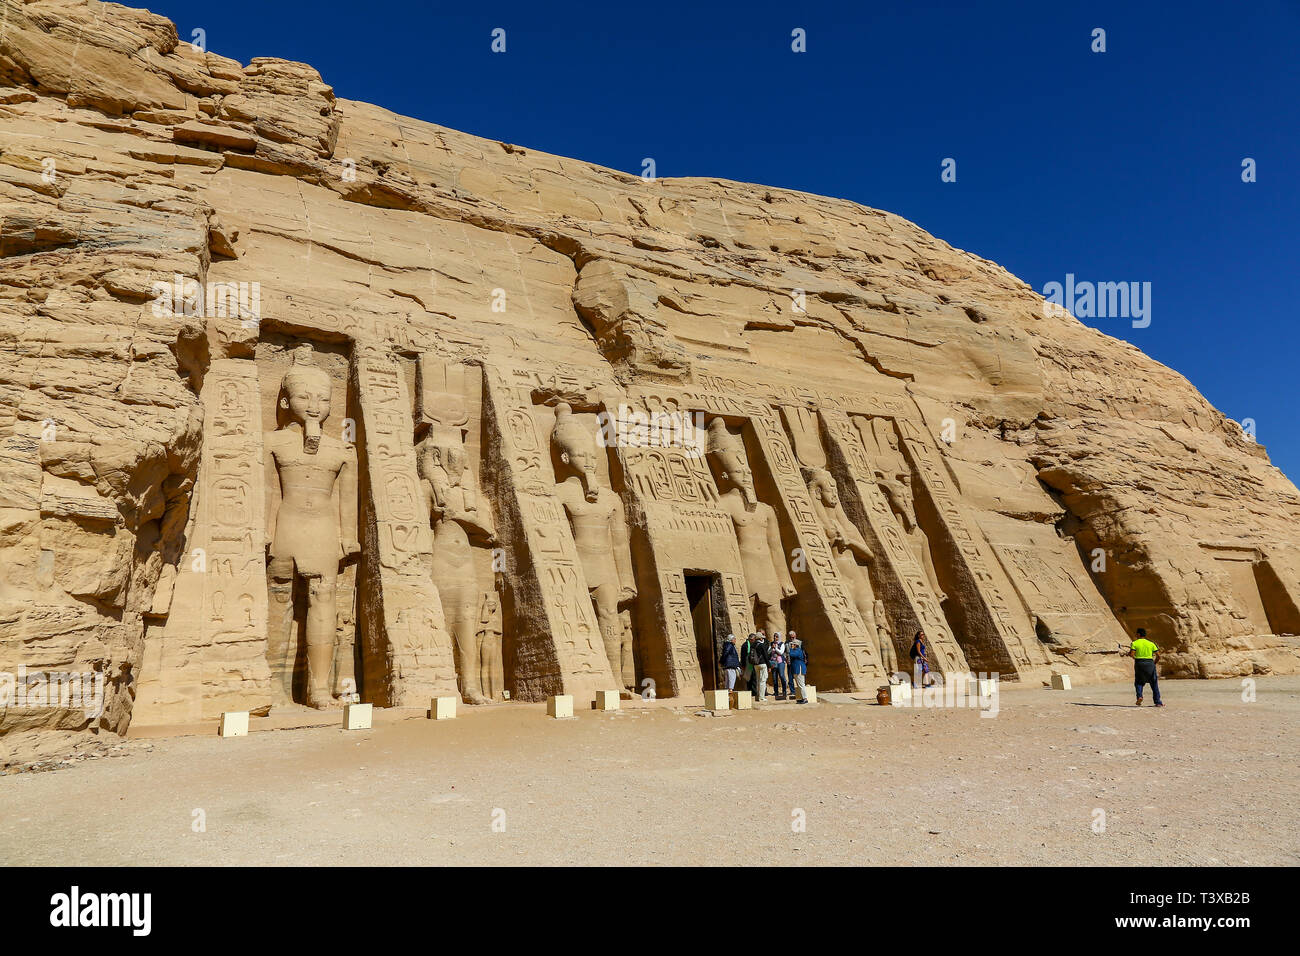 Der Tempel der Hathor und Nefertari, auch bekannt als der kleine Tempel in Abu Simbel, Ägypten, Nordafrika Stockfoto